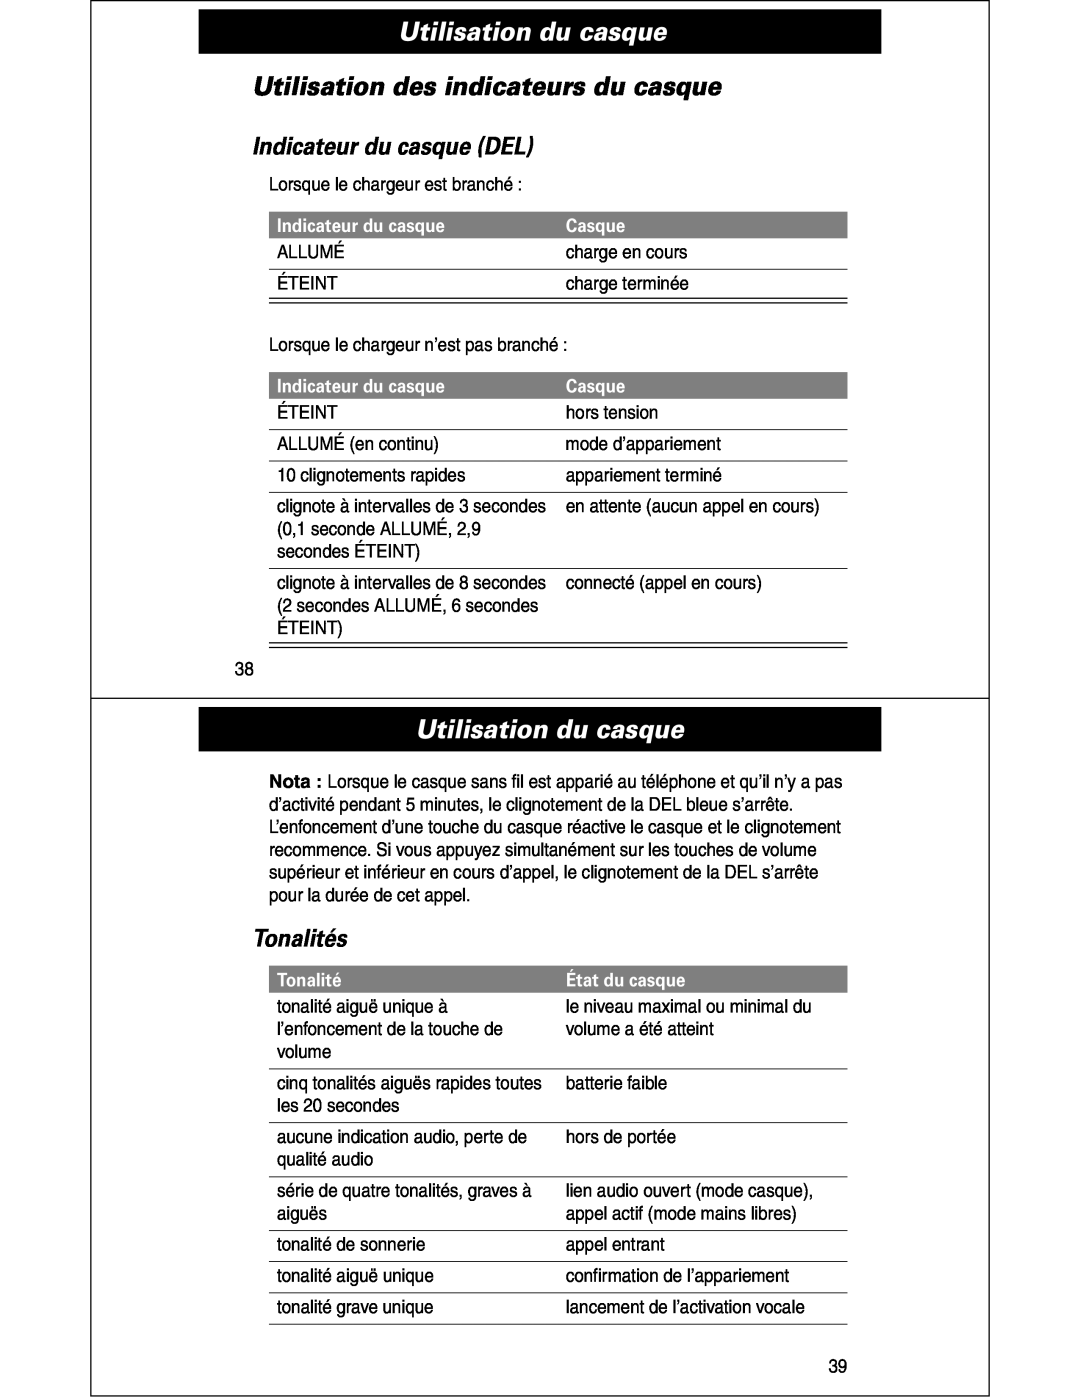 Motorola HS810 manual Utilisation des indicateurs du casque, Indicateur du casque DEL, Tonalités, Casque, État du casque 